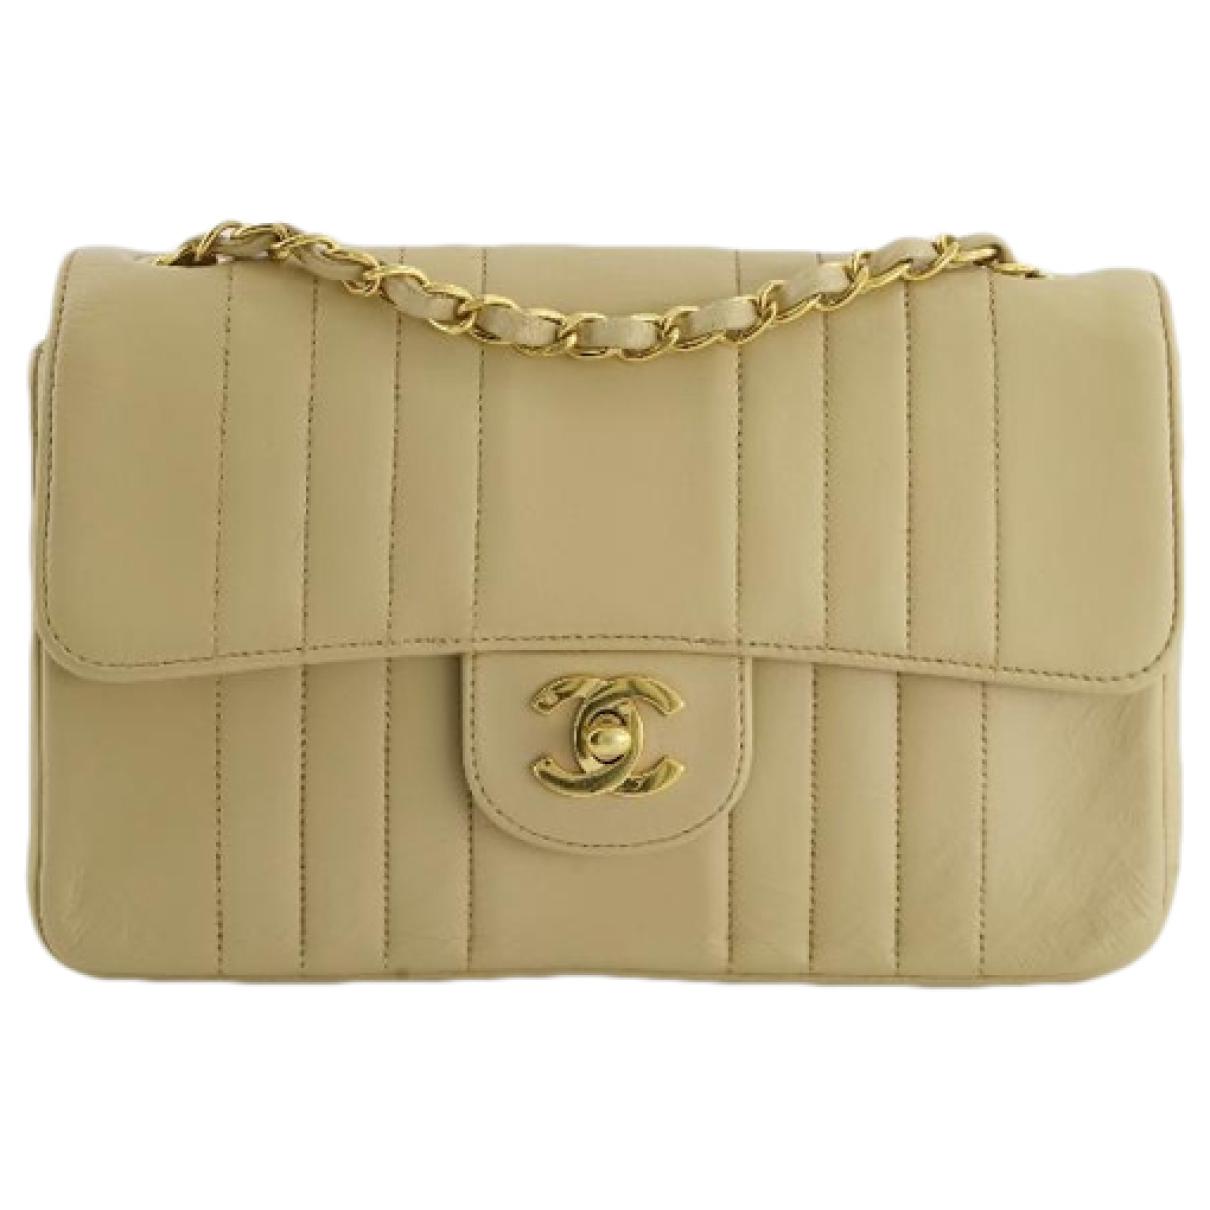 Mademoiselle leather handbag